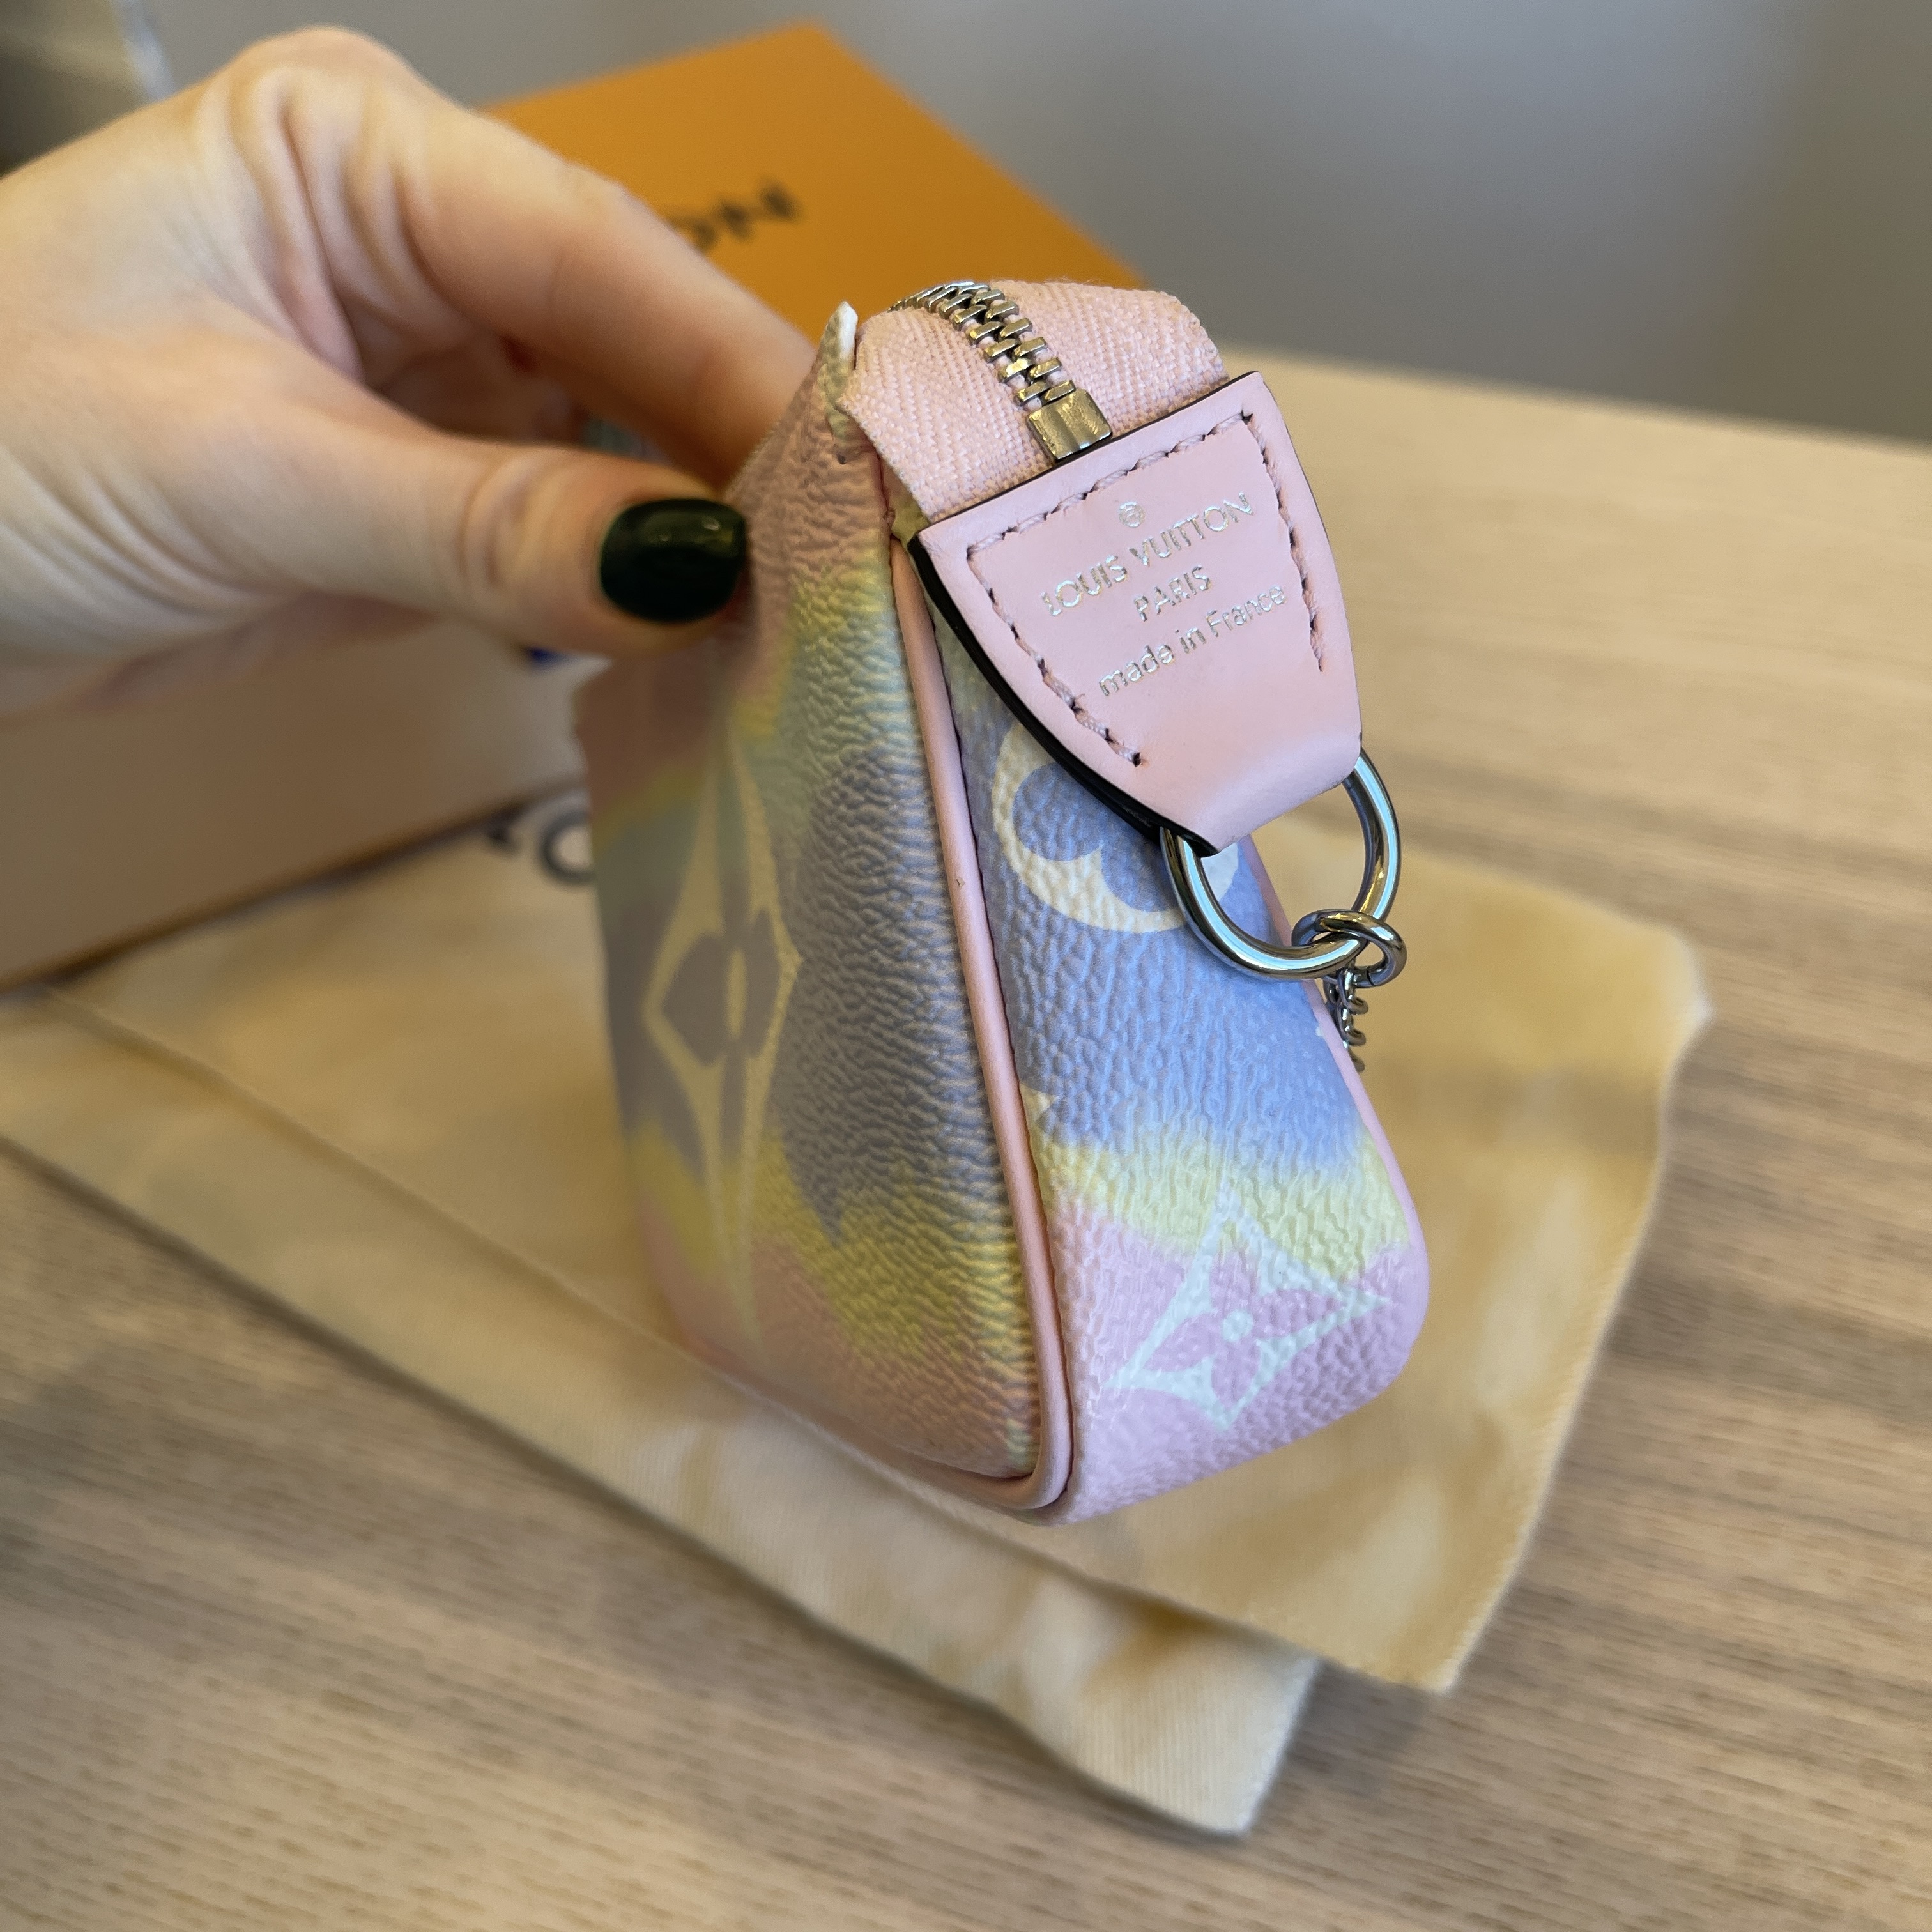 Louis Vuitton Escale Mini Pochette Accessories